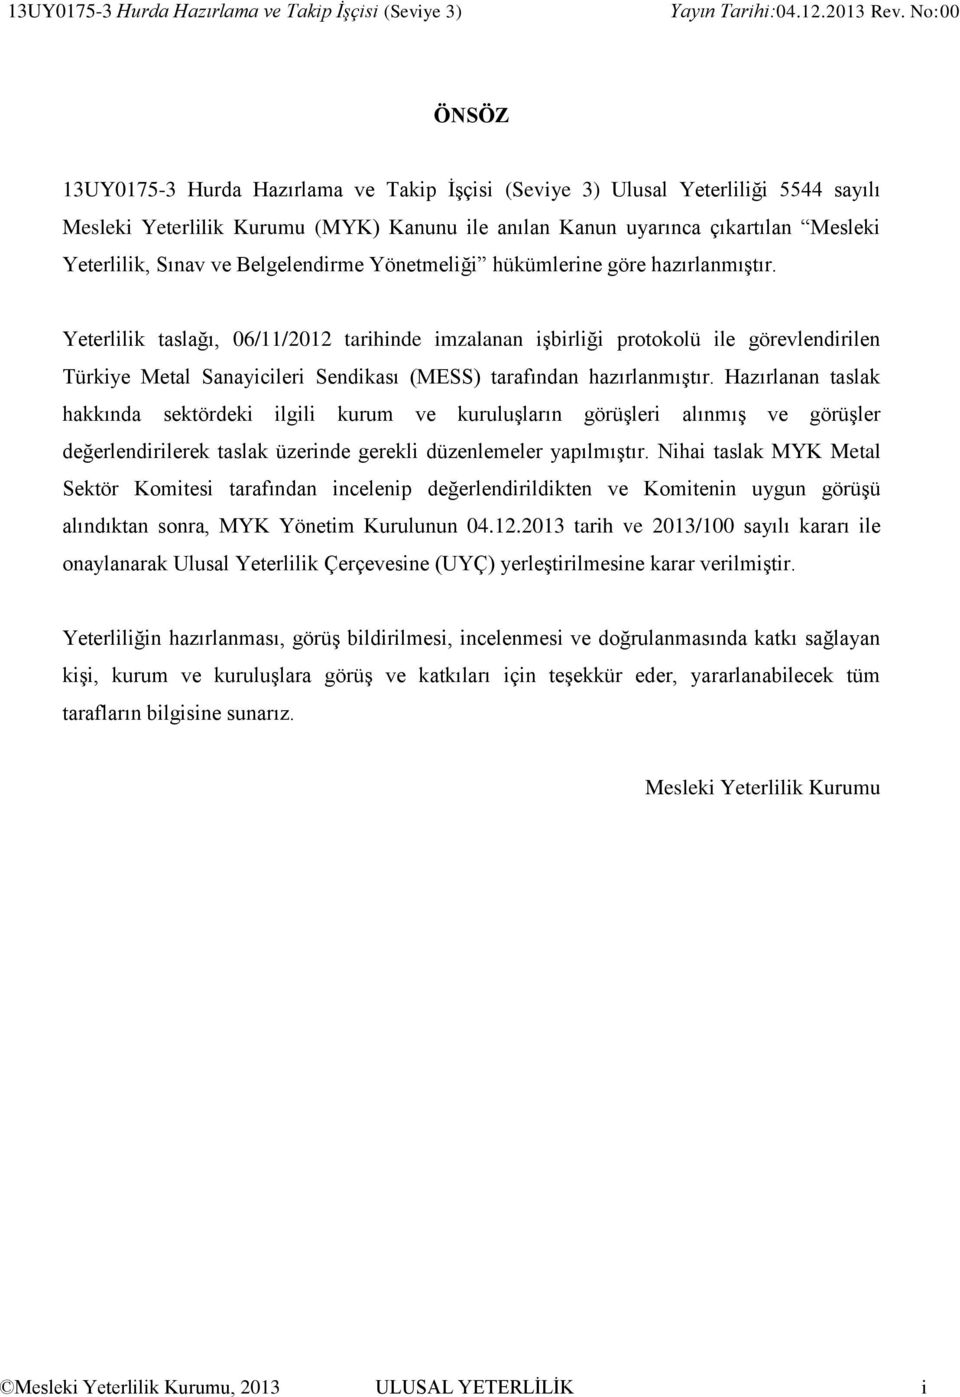 Yeterlilik taslağı, 06/11/2012 tarihinde imzalanan işbirliği protokolü ile görevlendirilen Türkiye Metal Sanayicileri Sendikası (MESS) tarafından hazırlanmıştır.